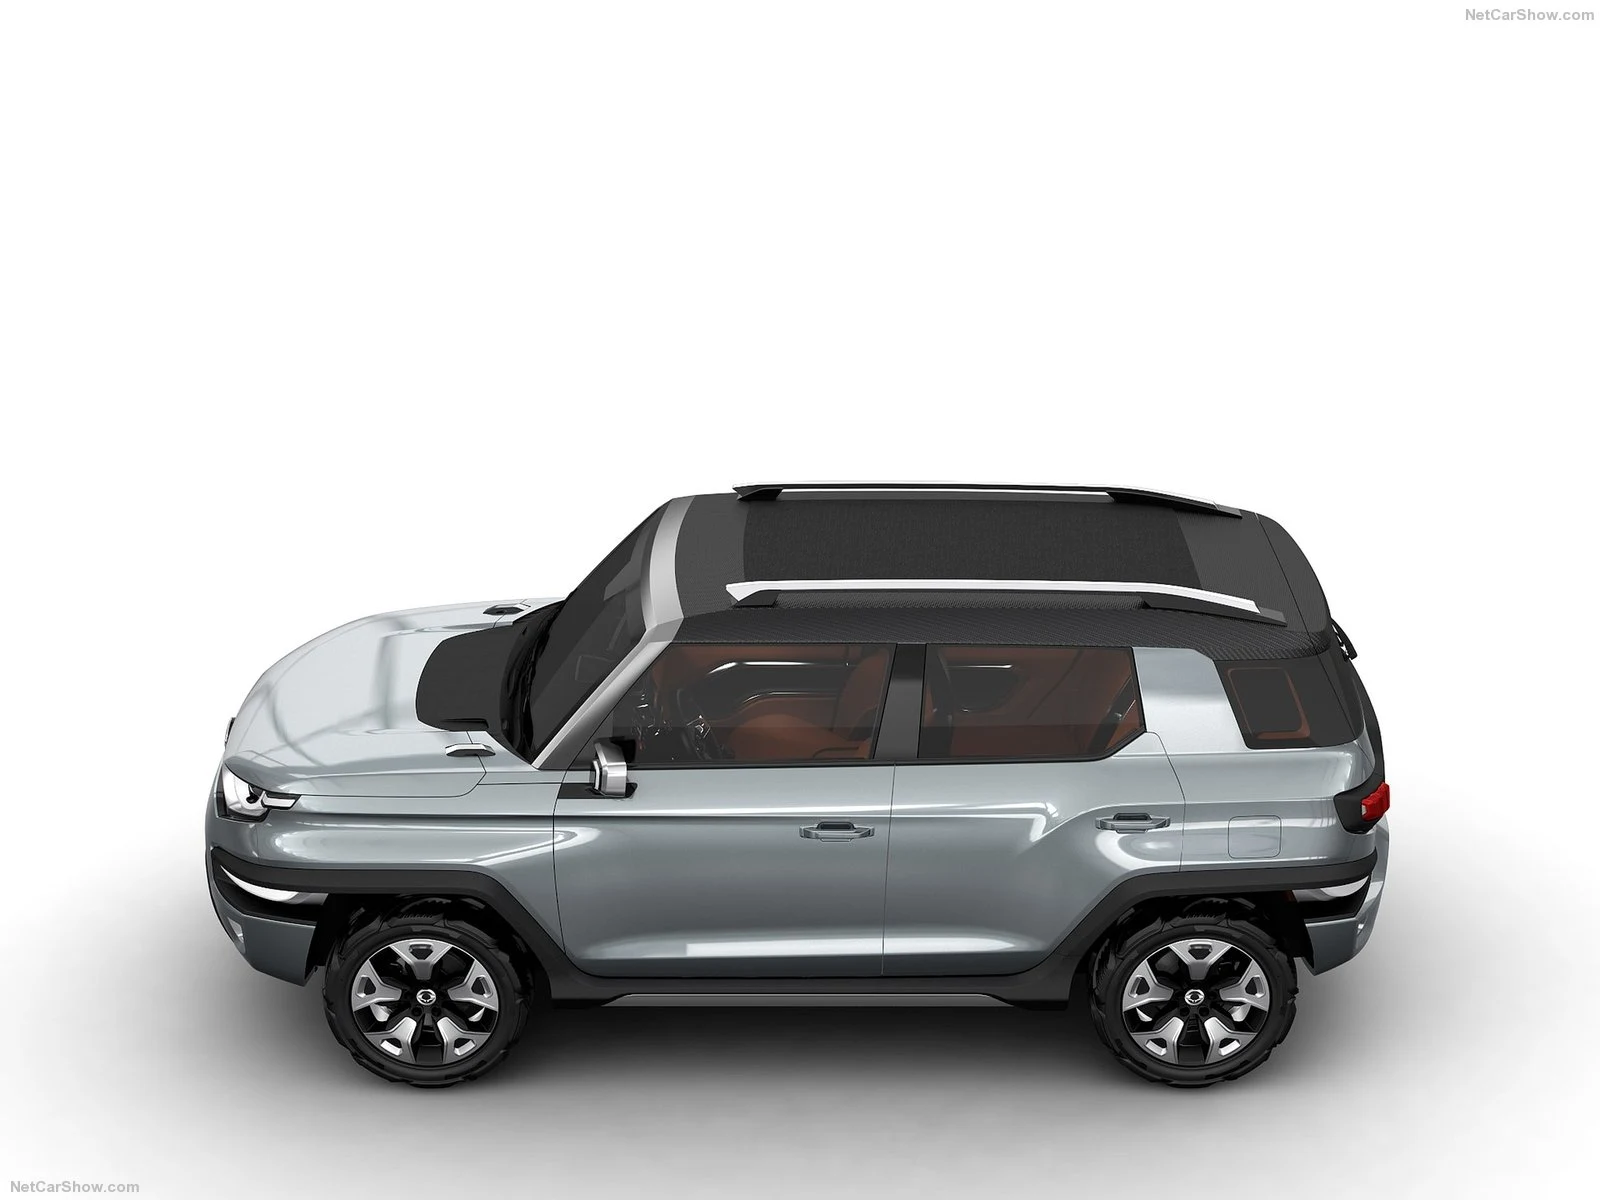 Hình ảnh xe ô tô SsangYong XAV-Adventure Concept 2015 & nội ngoại thất